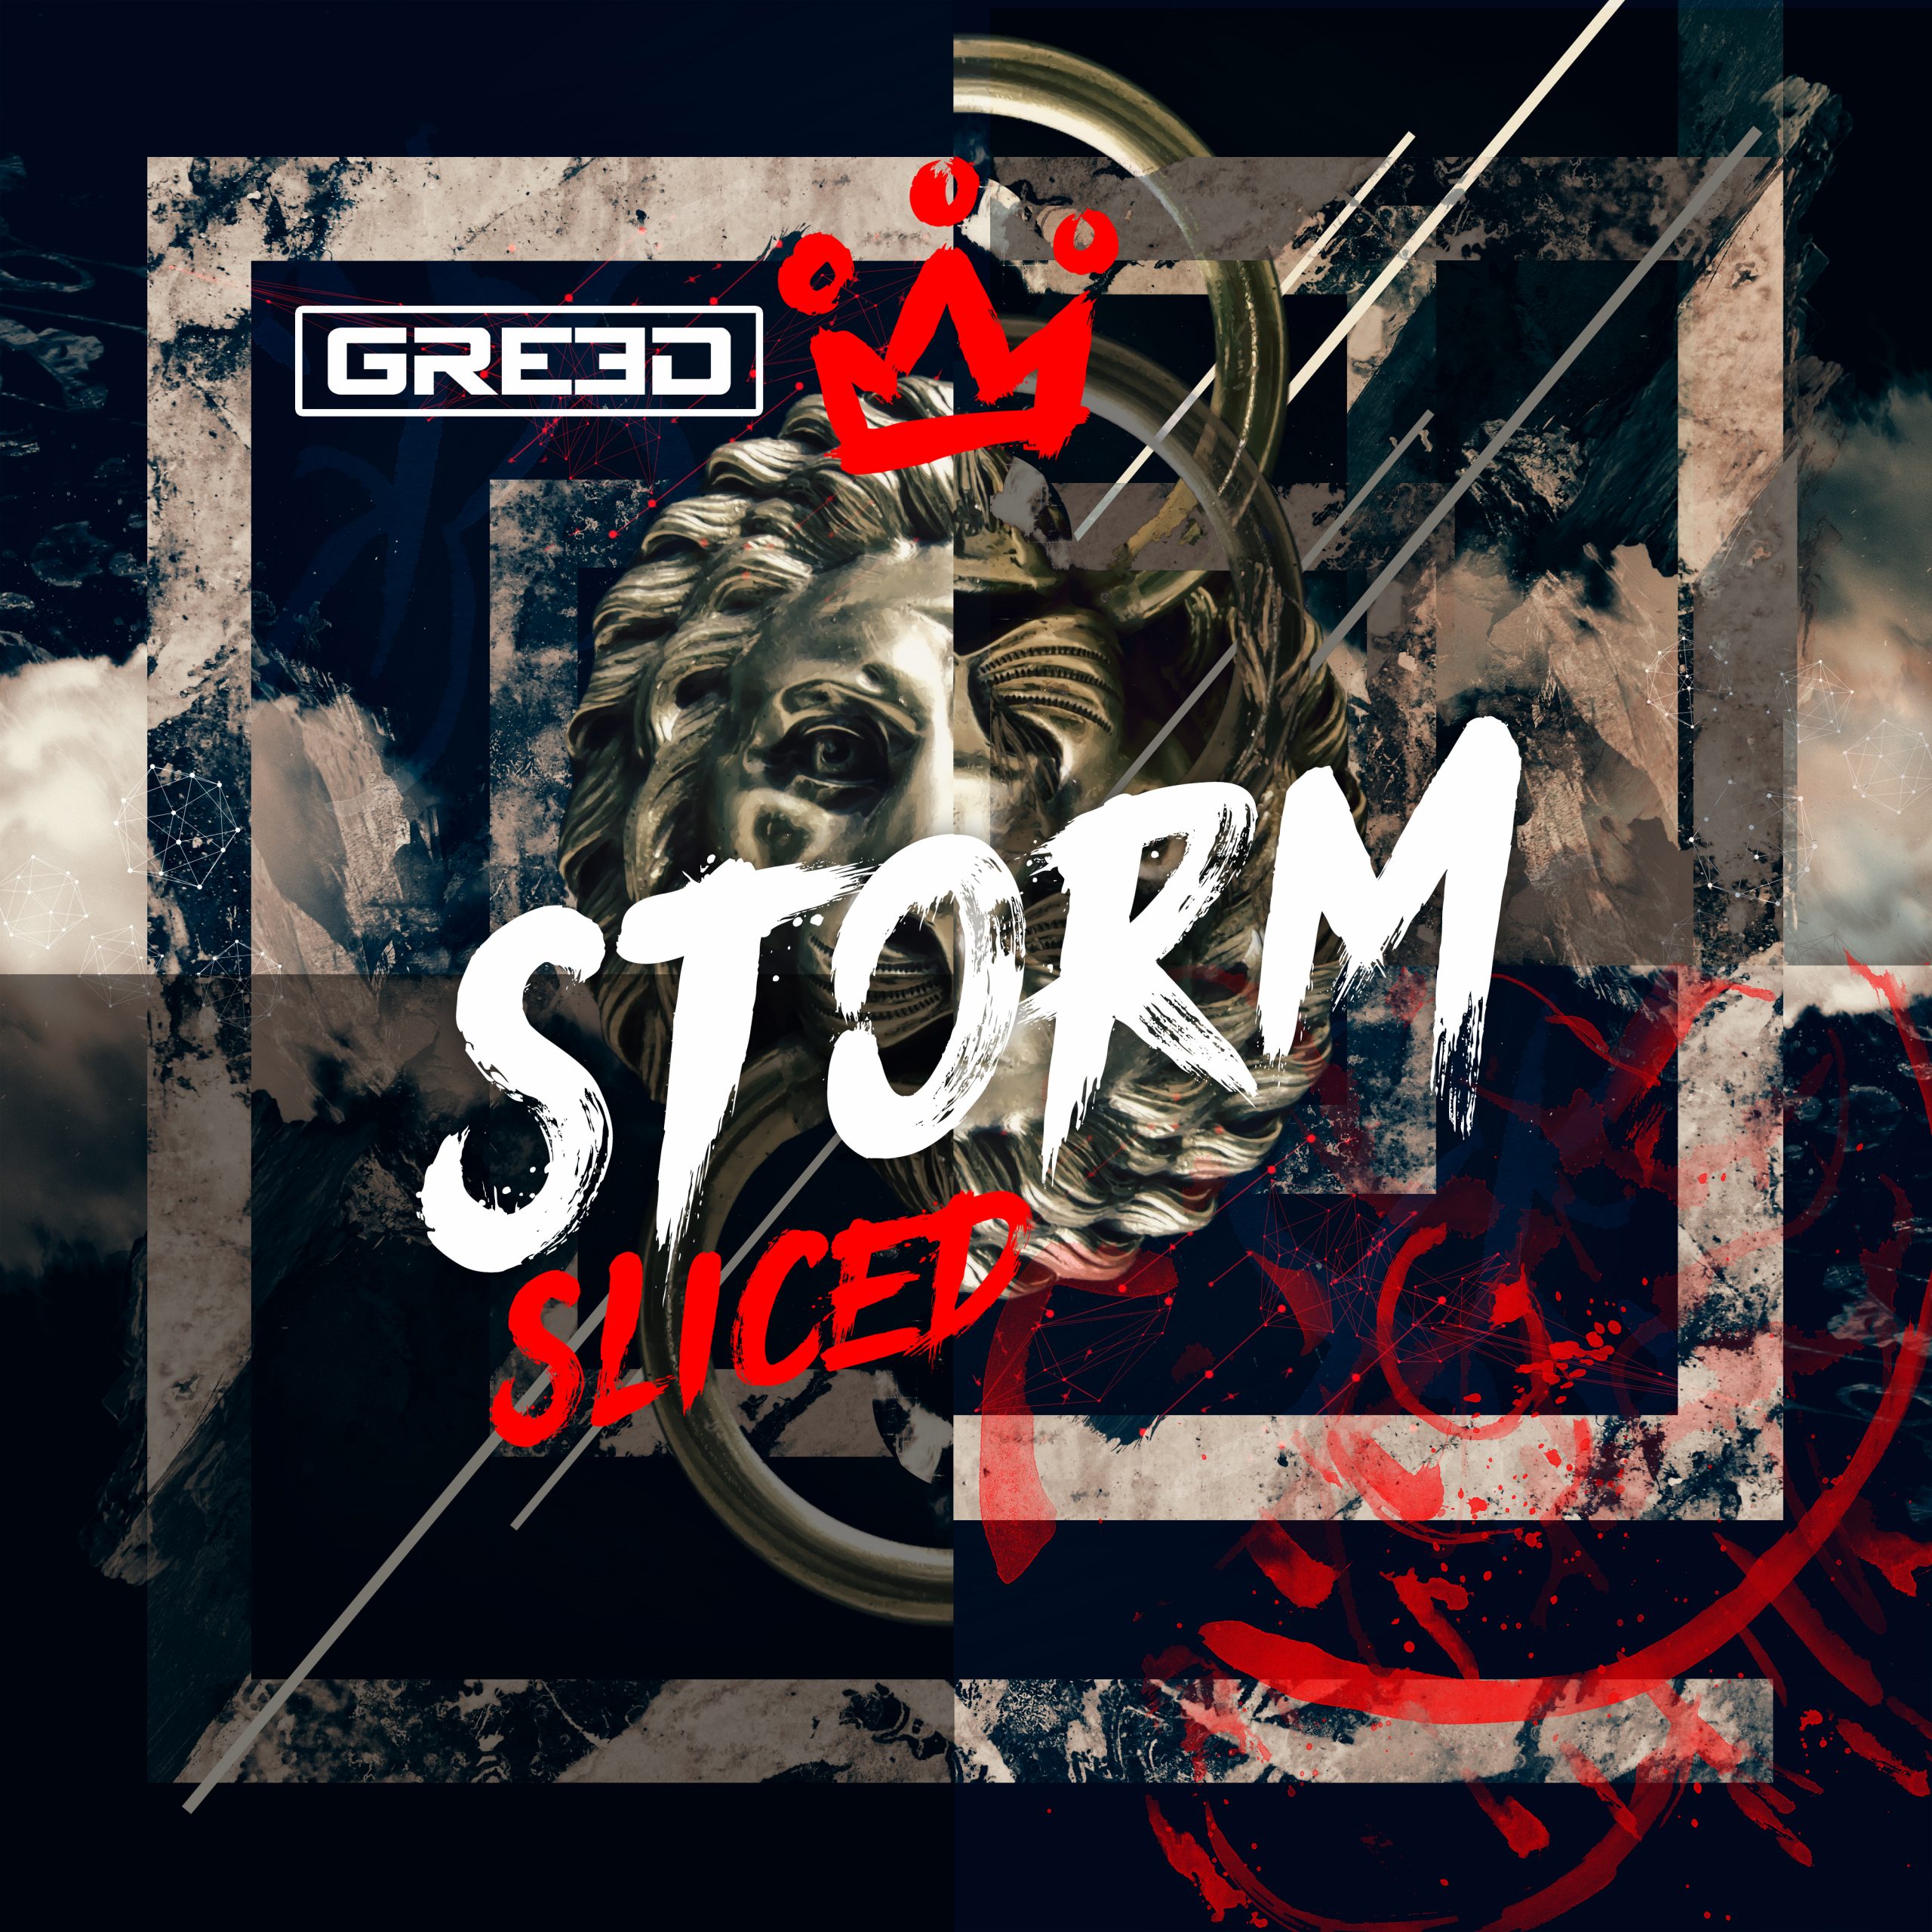 GR33D Stormsliced album release